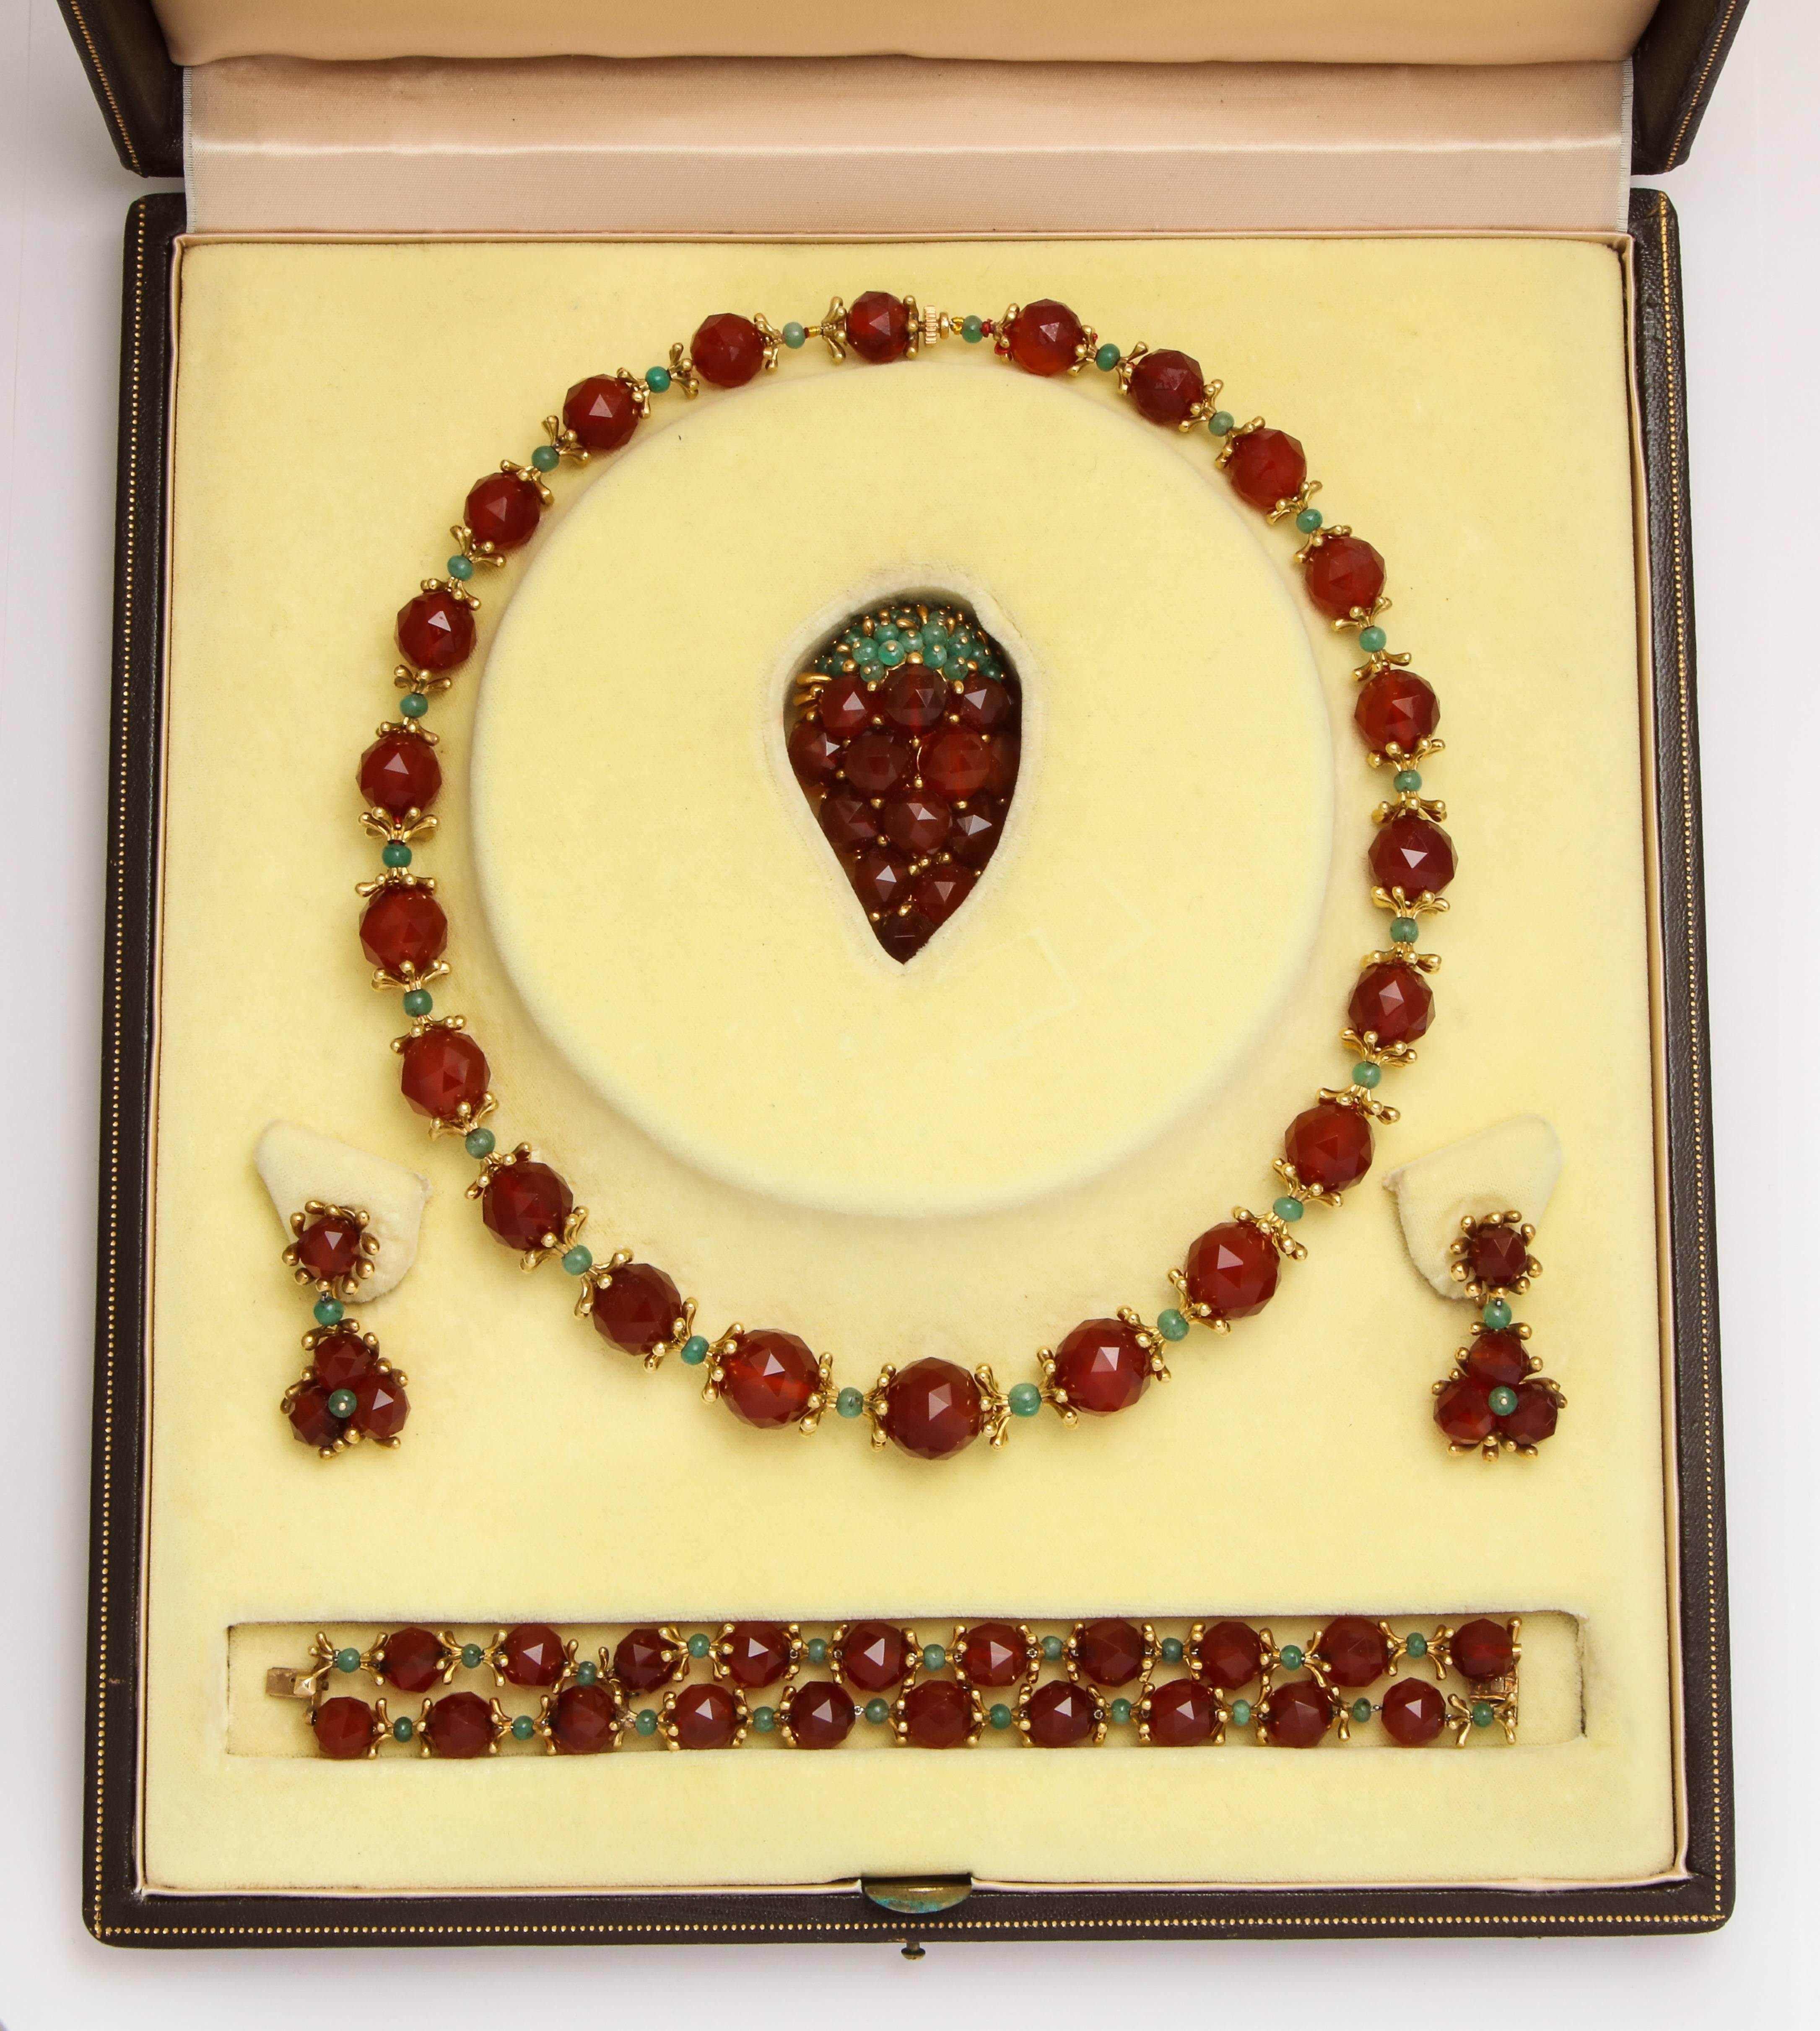 Nous proposons un magnifique ensemble de bijoux uniques des années 1950, créés par le designer Robert Barre, utilisant de riches perles de cornaline facettées de couleur ambre avec des capuchons en or 18 carats de forme organique moderne séparés par